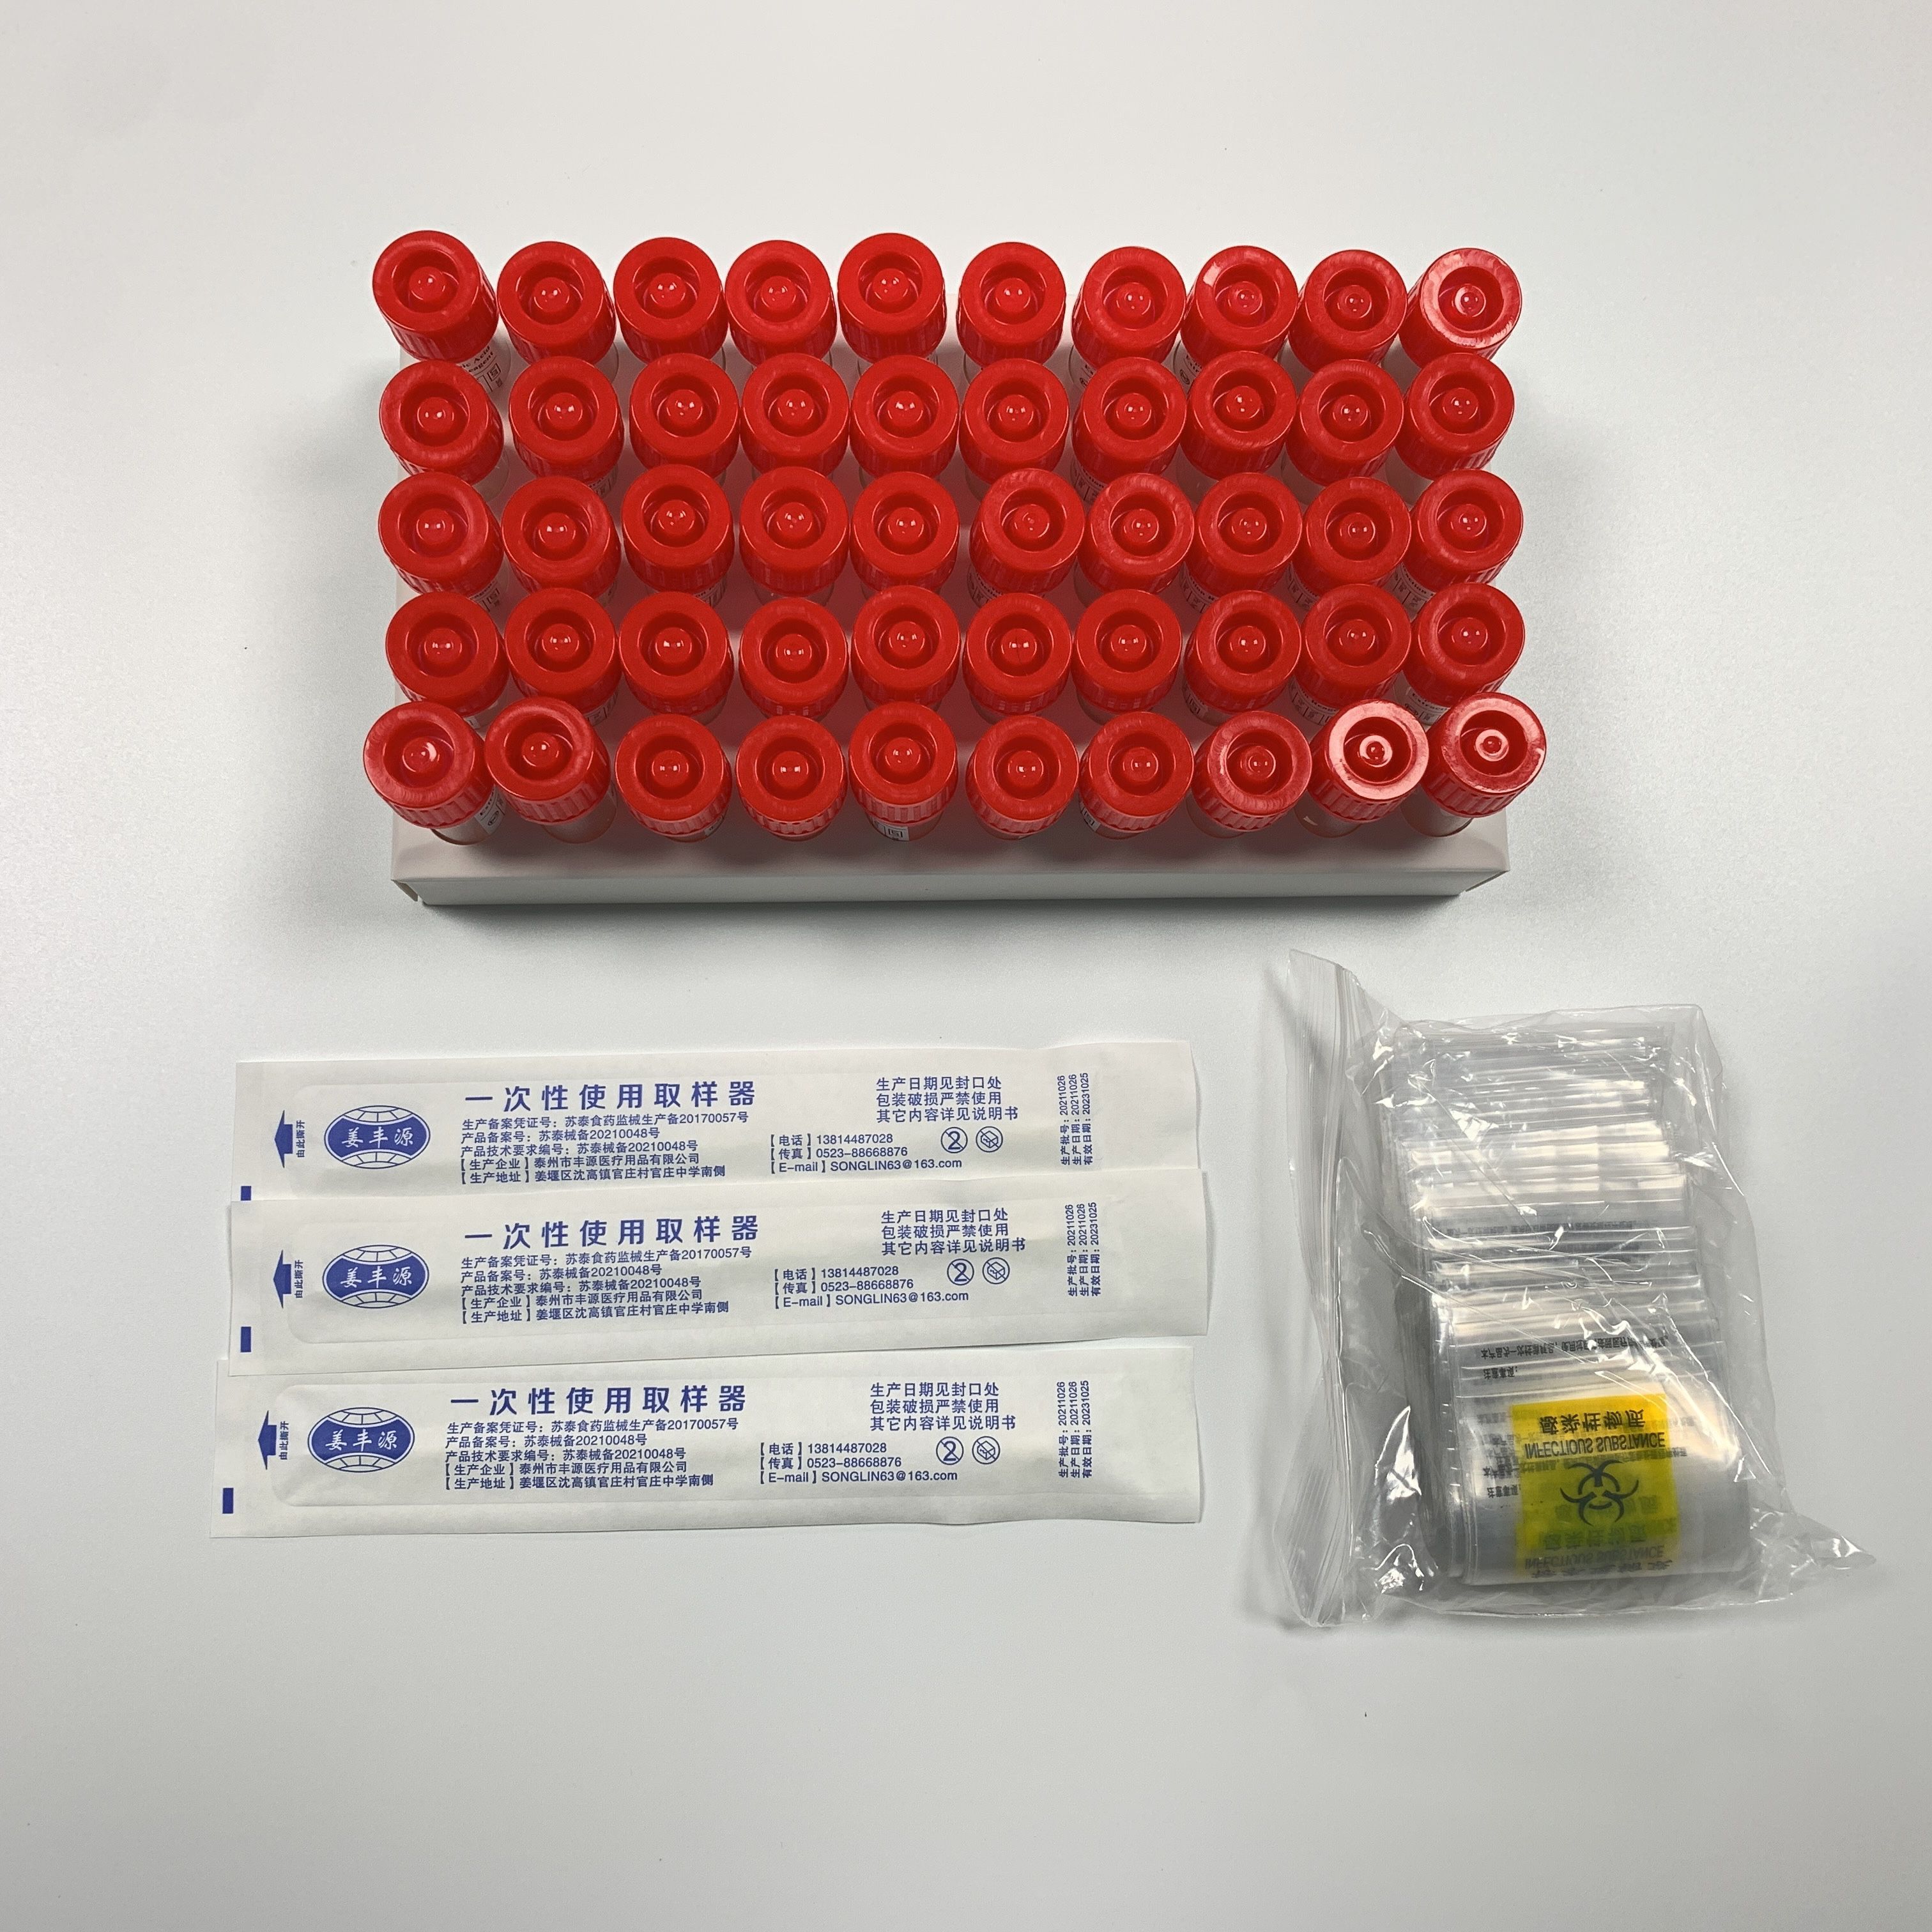 Čína Čína Levná cena China Virus Vzorkovací souprava pro odběr vzorků inaktivovaných nebo neinaktivovaných virů výrobci a dodavatelé zkumavek |Jianma